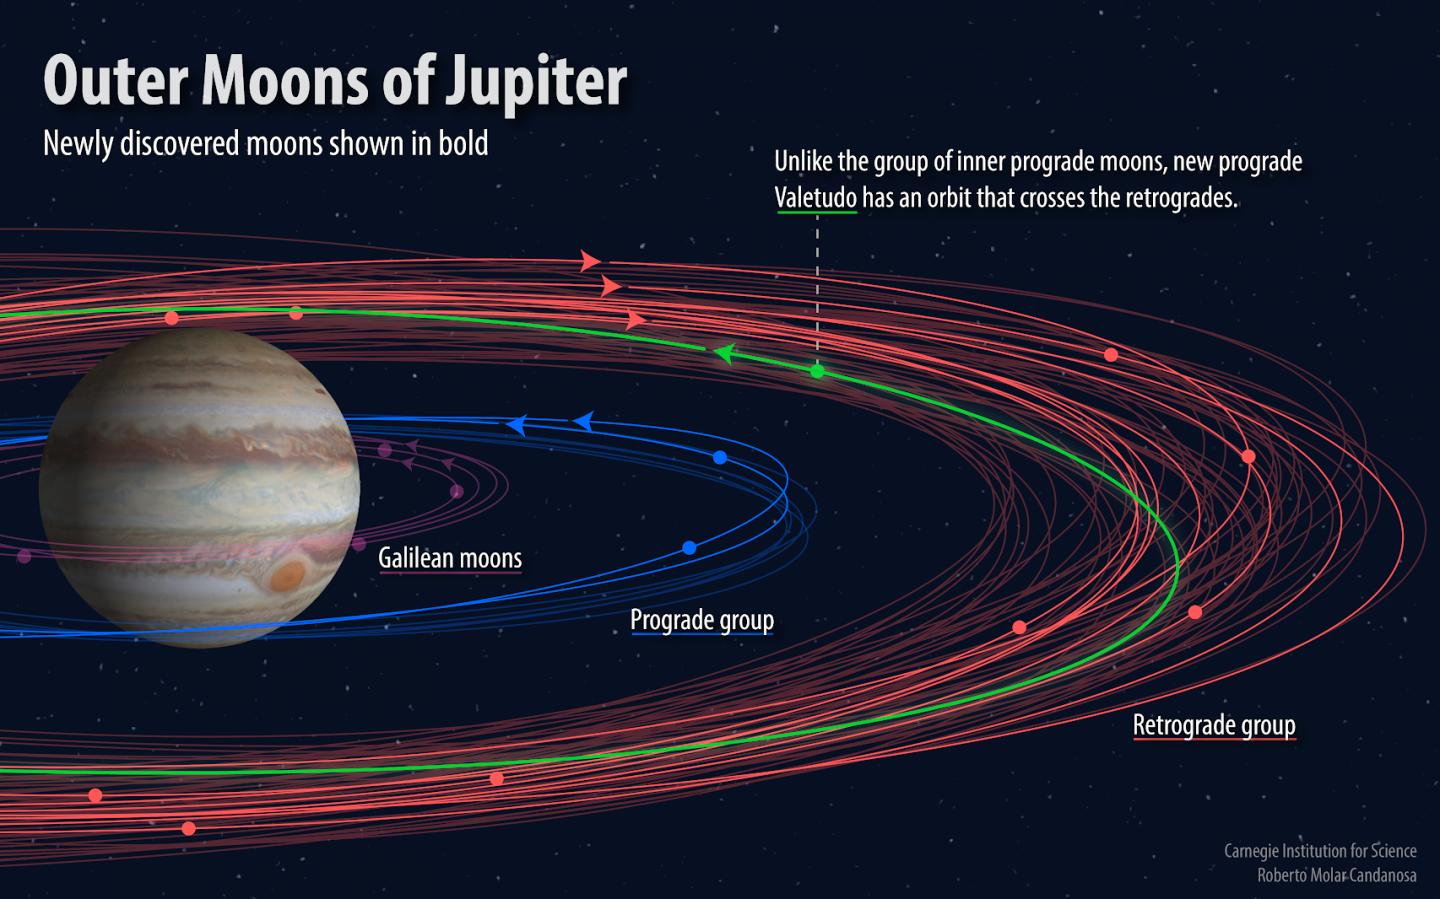 新发现的12颗木星卫星运行轨迹.(图源:卡内基科学学会)